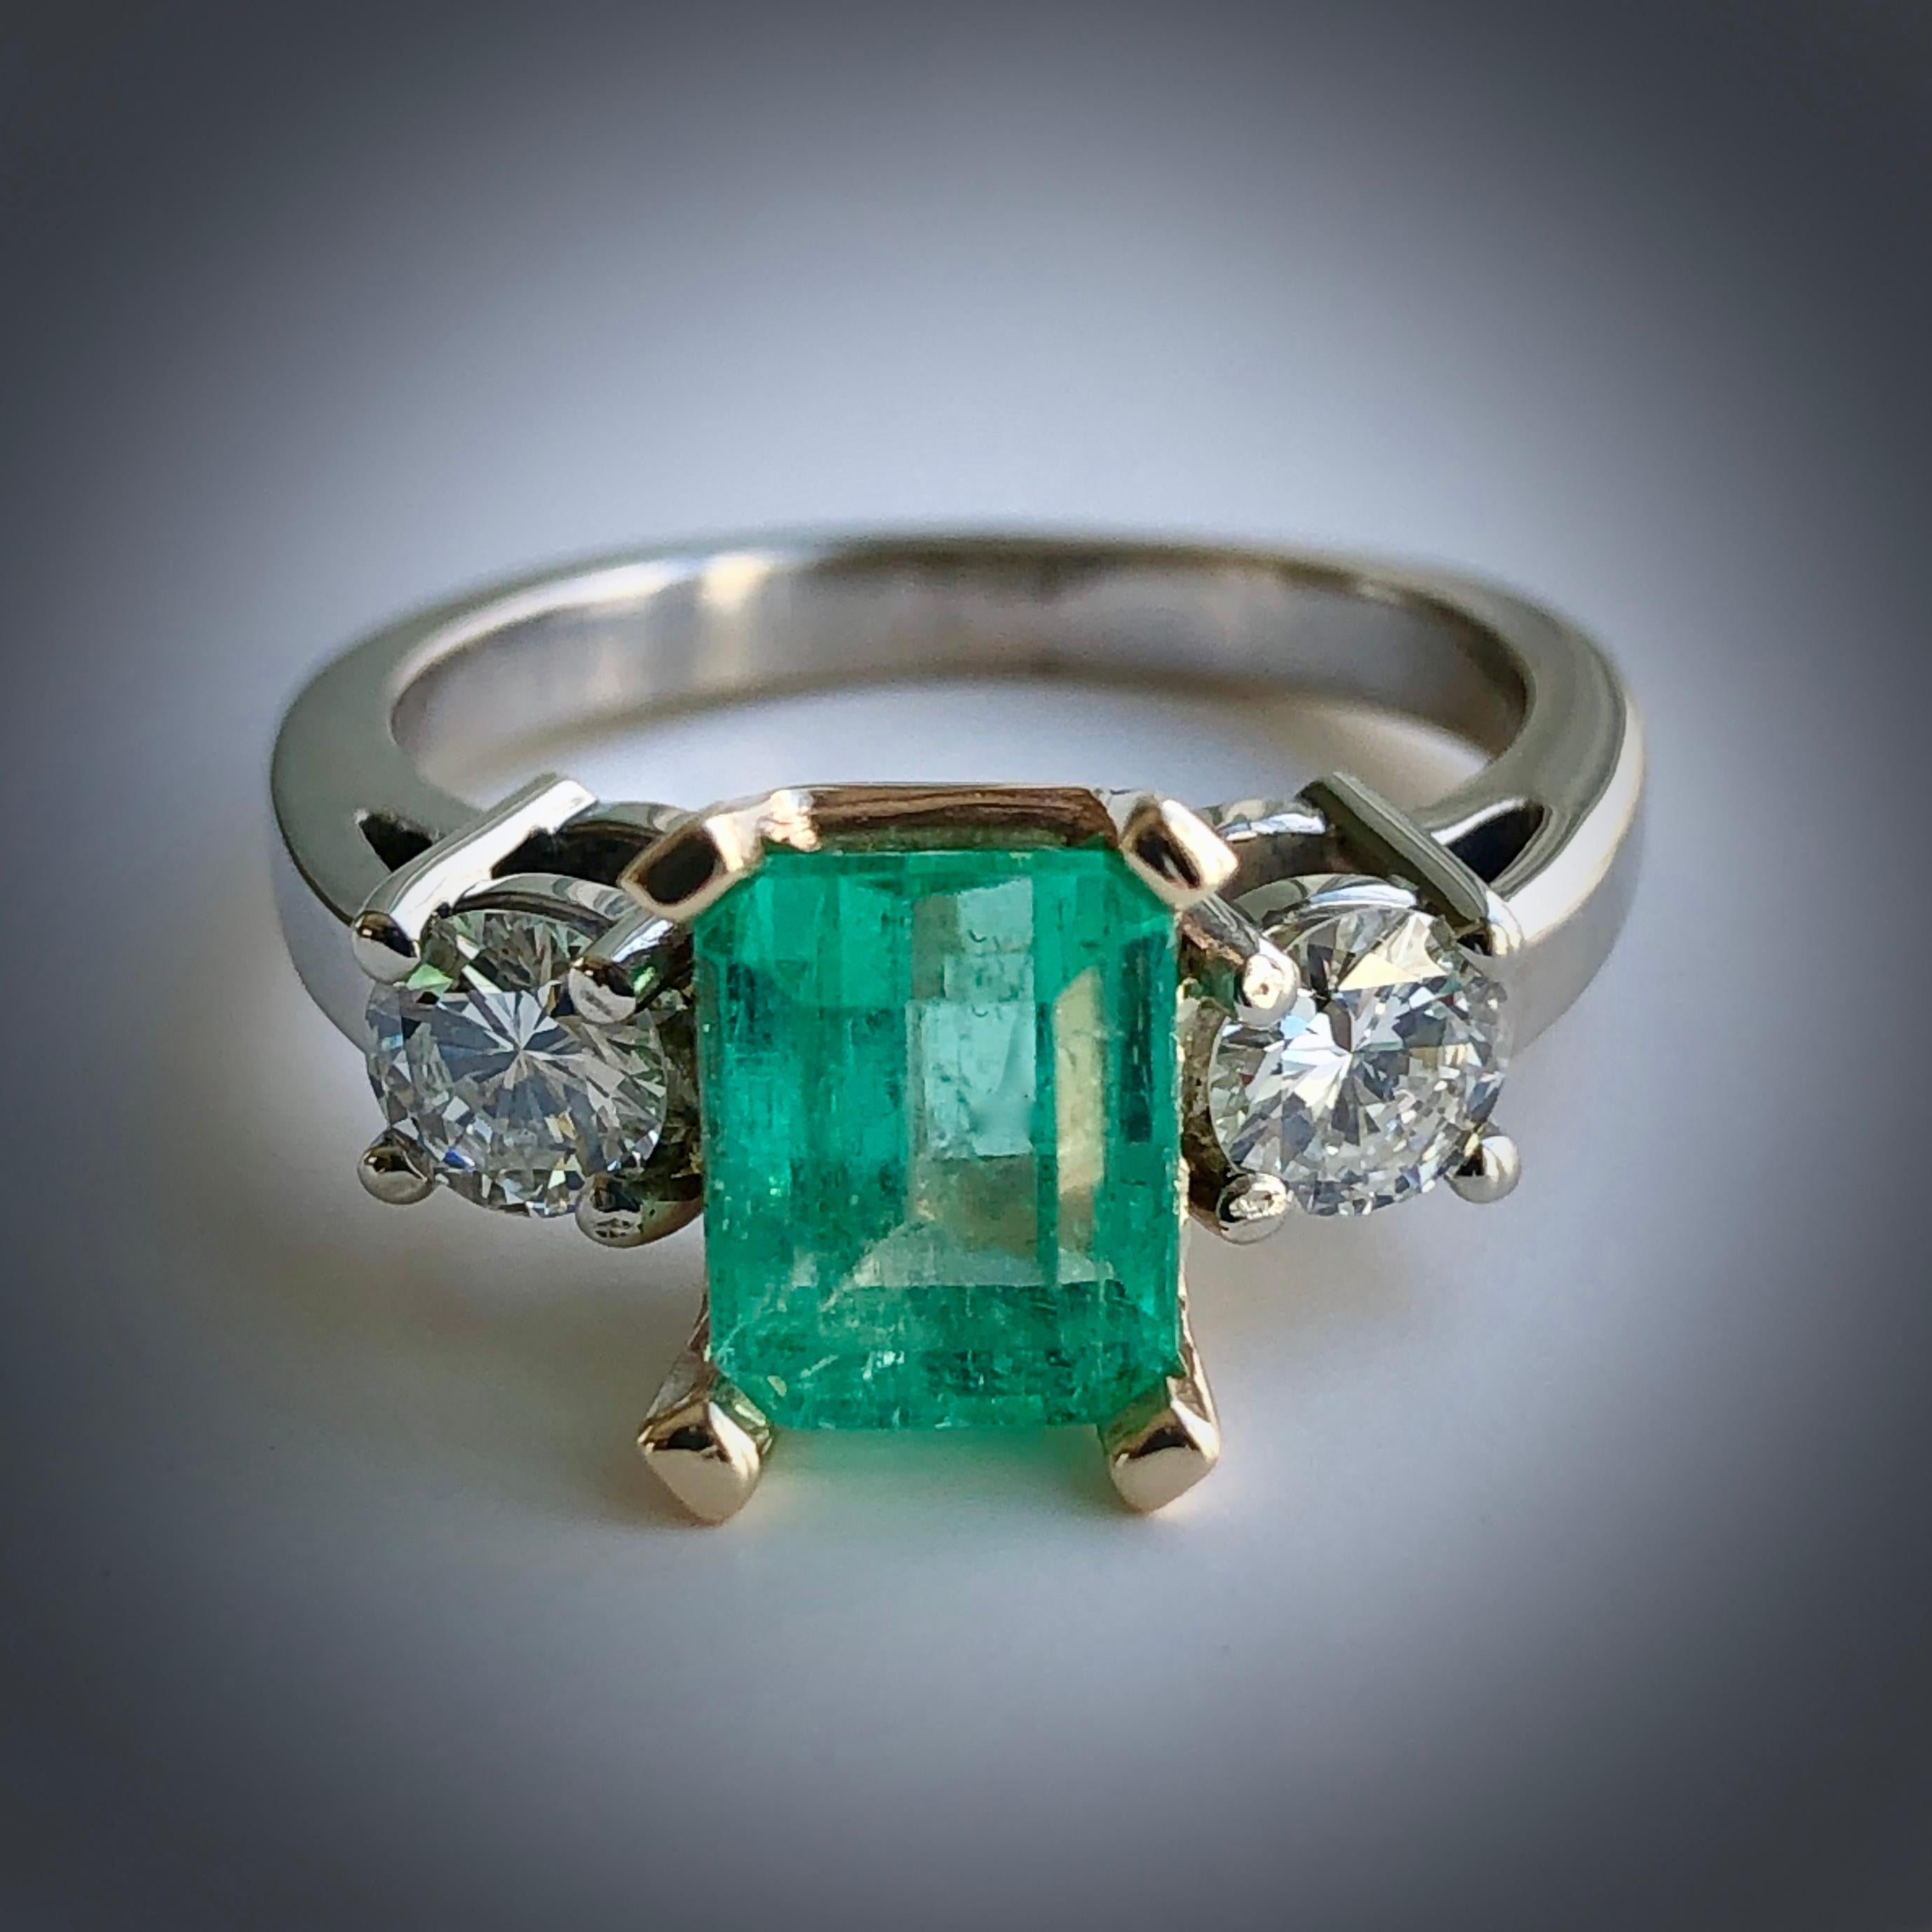 2.5 carat emerald price